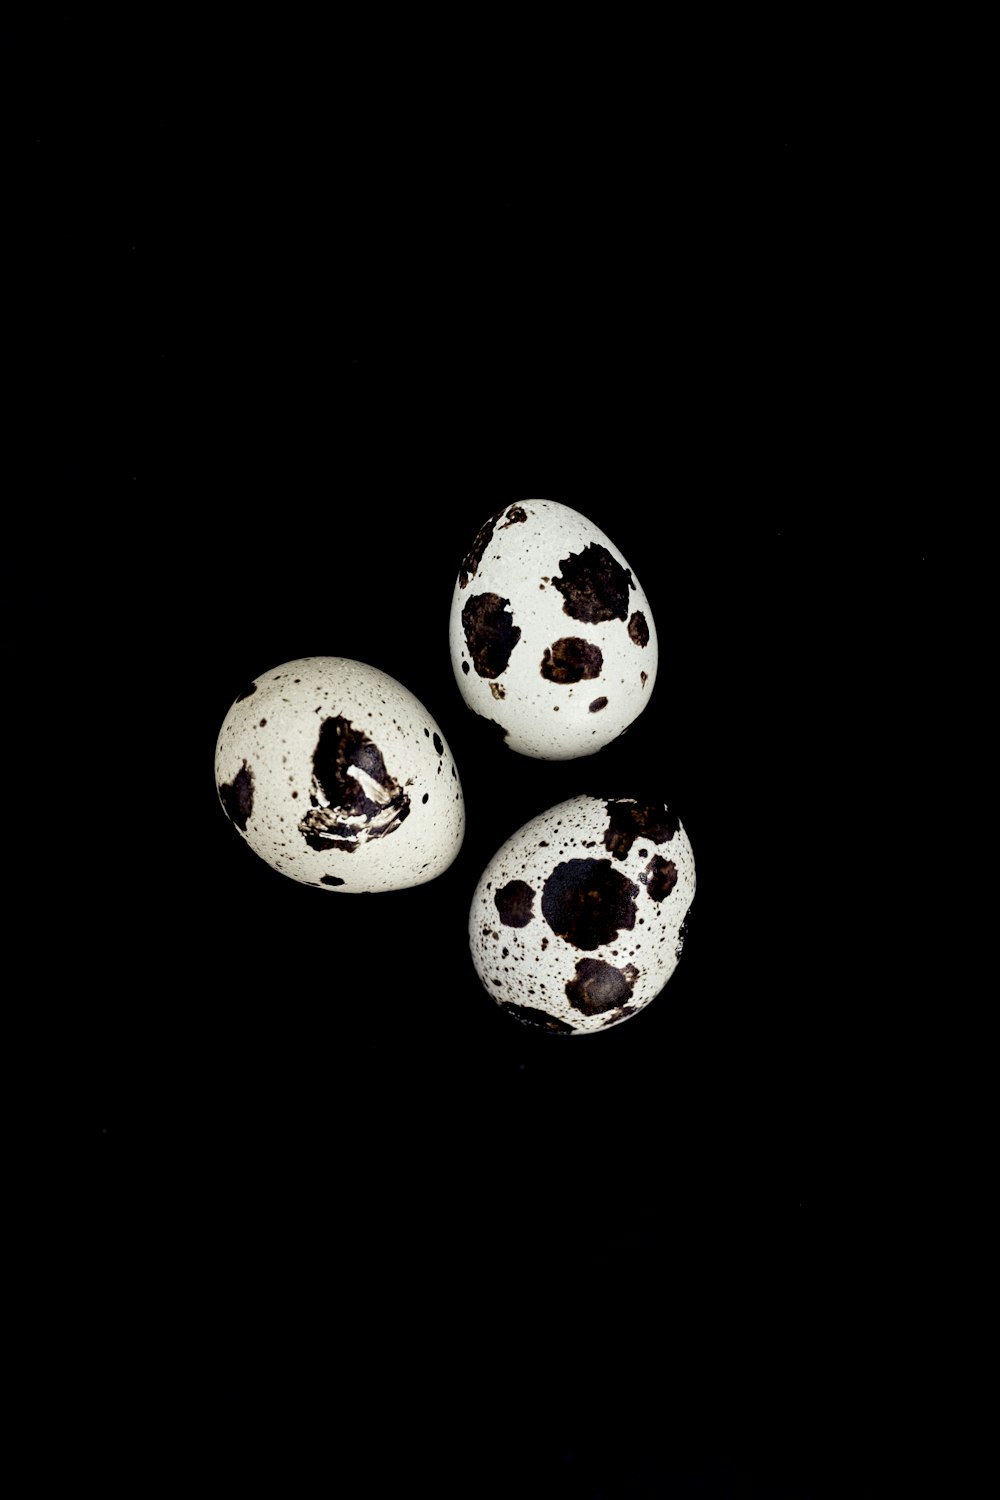 três ovos pretos e brancos